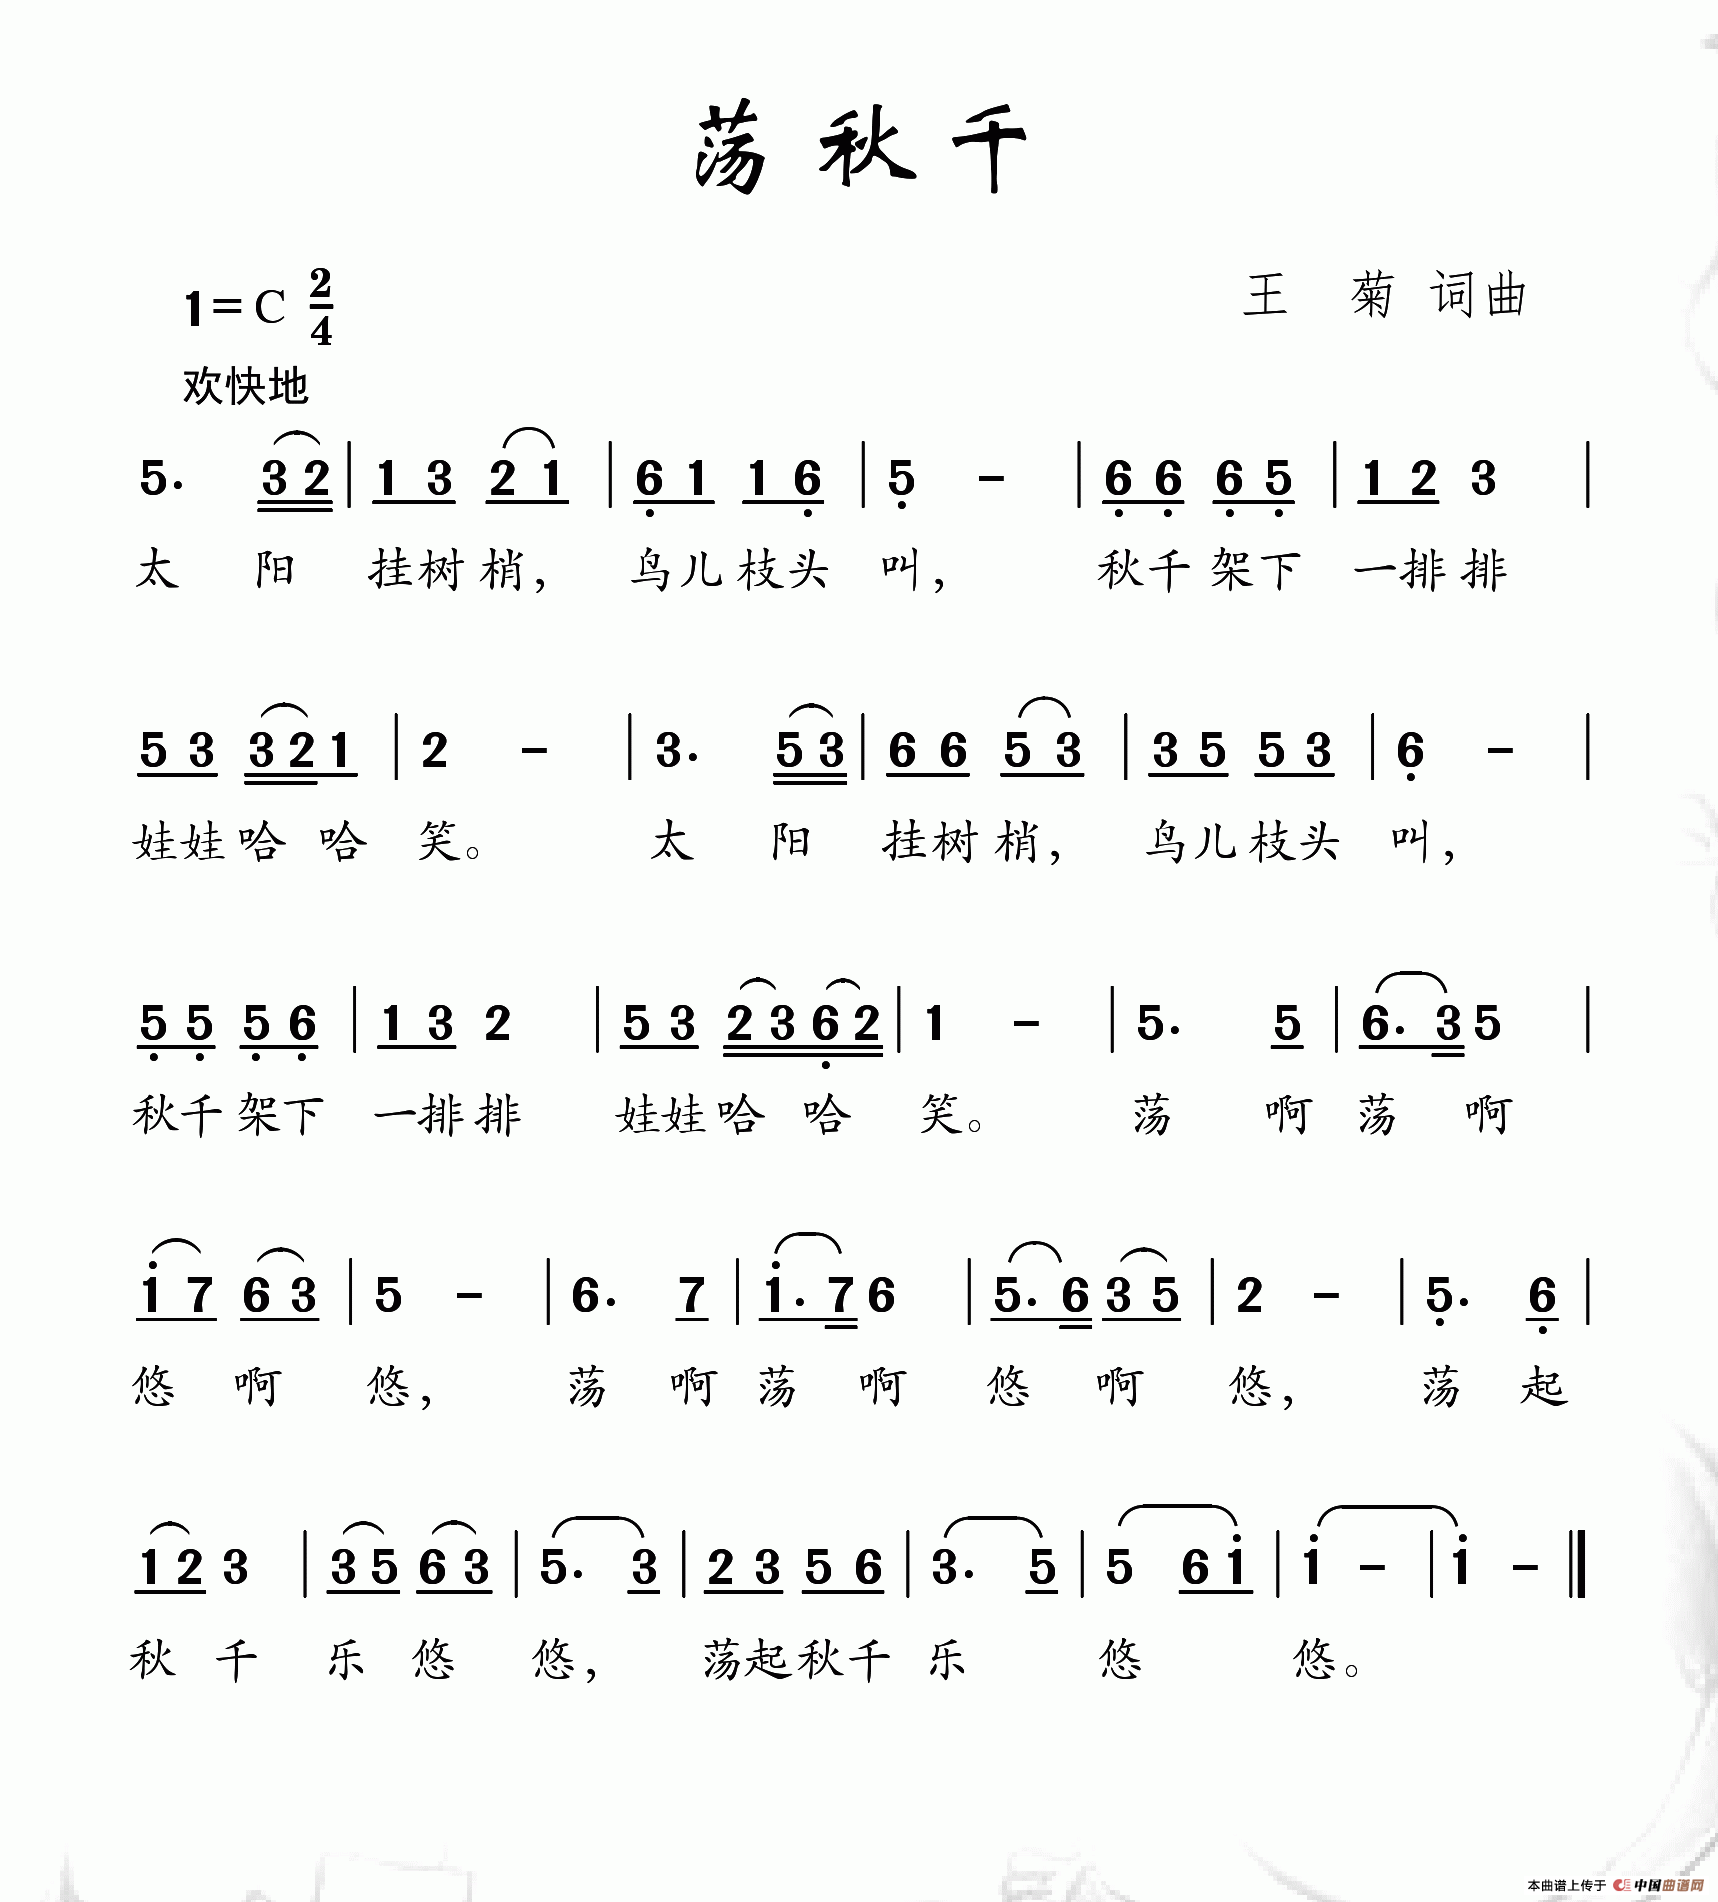 荡秋千（王菊词 王菊曲）(1)_荡秋千.png